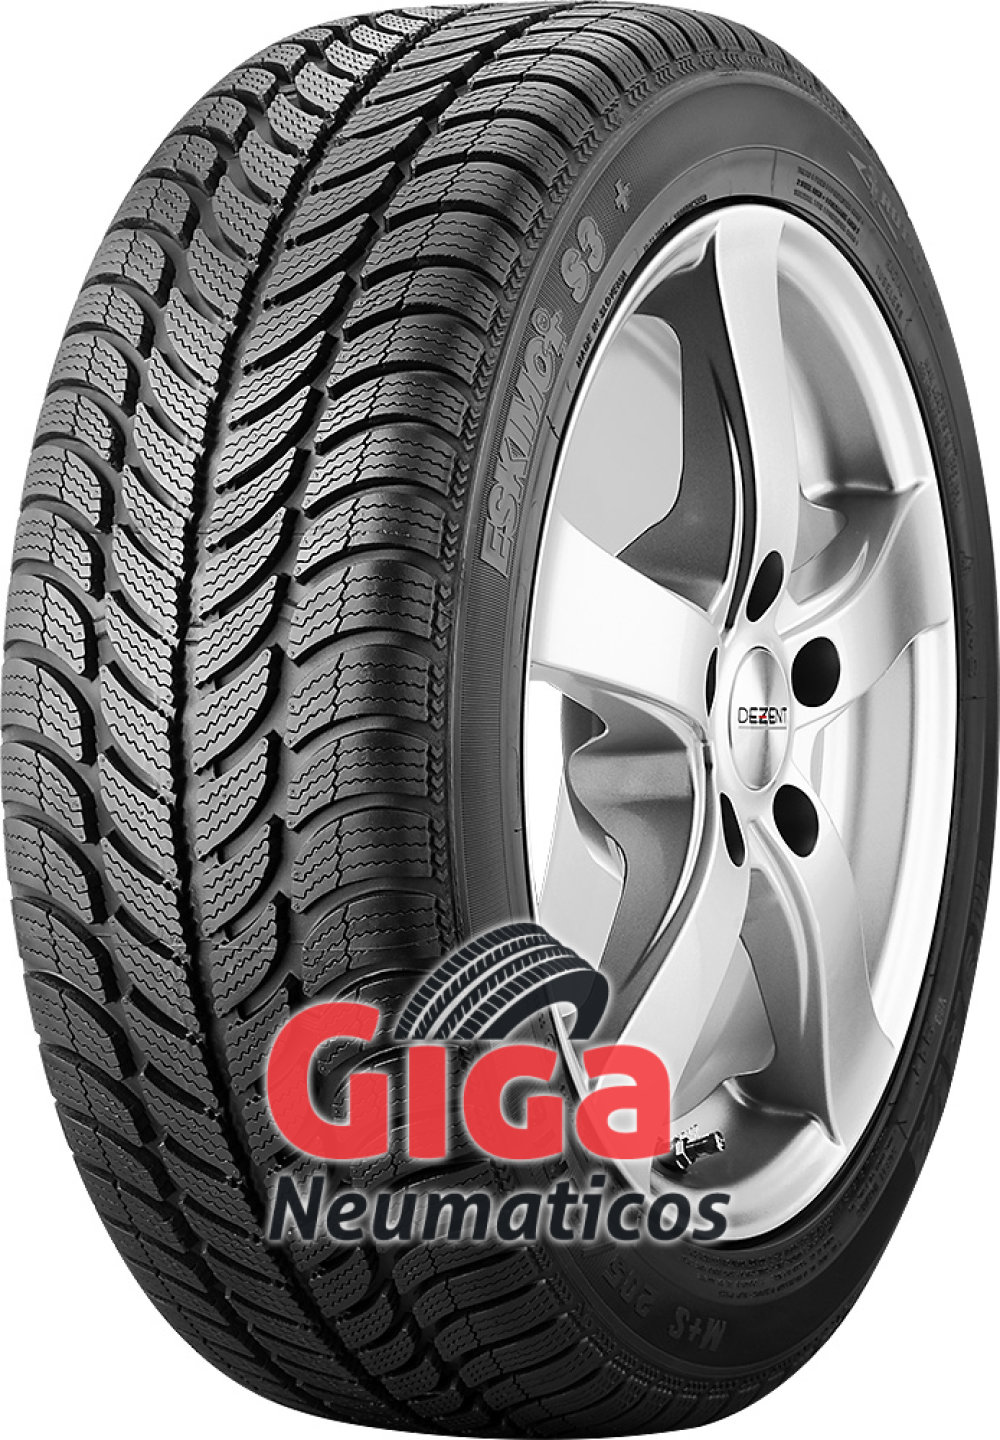 Comprar neumáticos Sava S3+ 195/65 R15 a precios económicos - giga-neumaticos.es